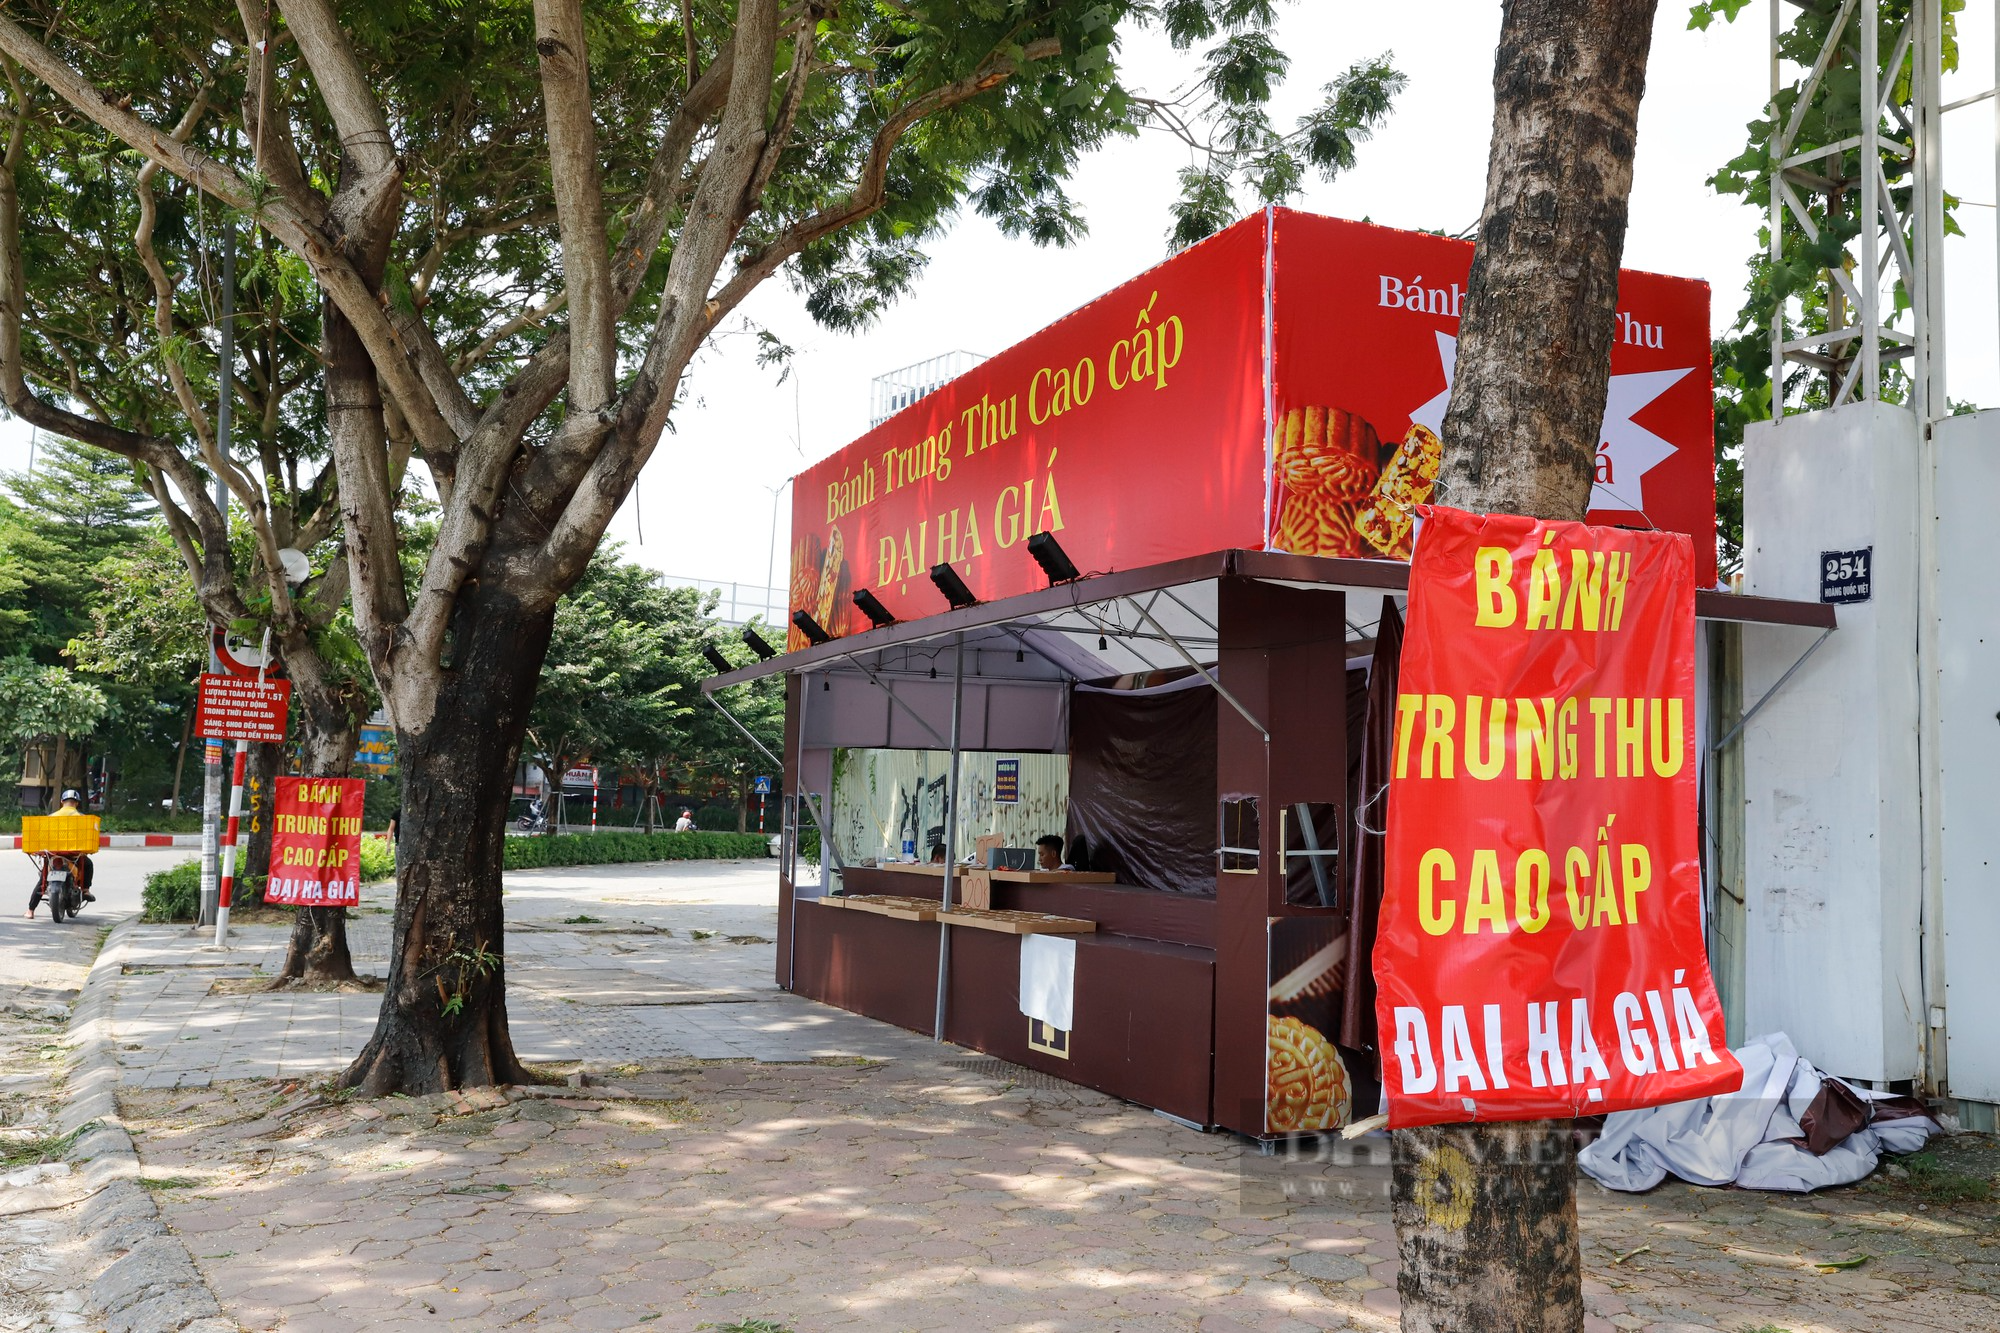 Bánh Trung thu đại hạ giá bán tràn lan vỉa hè Hà Nội với giá chỉ 25.000 đồng - Ảnh 13.